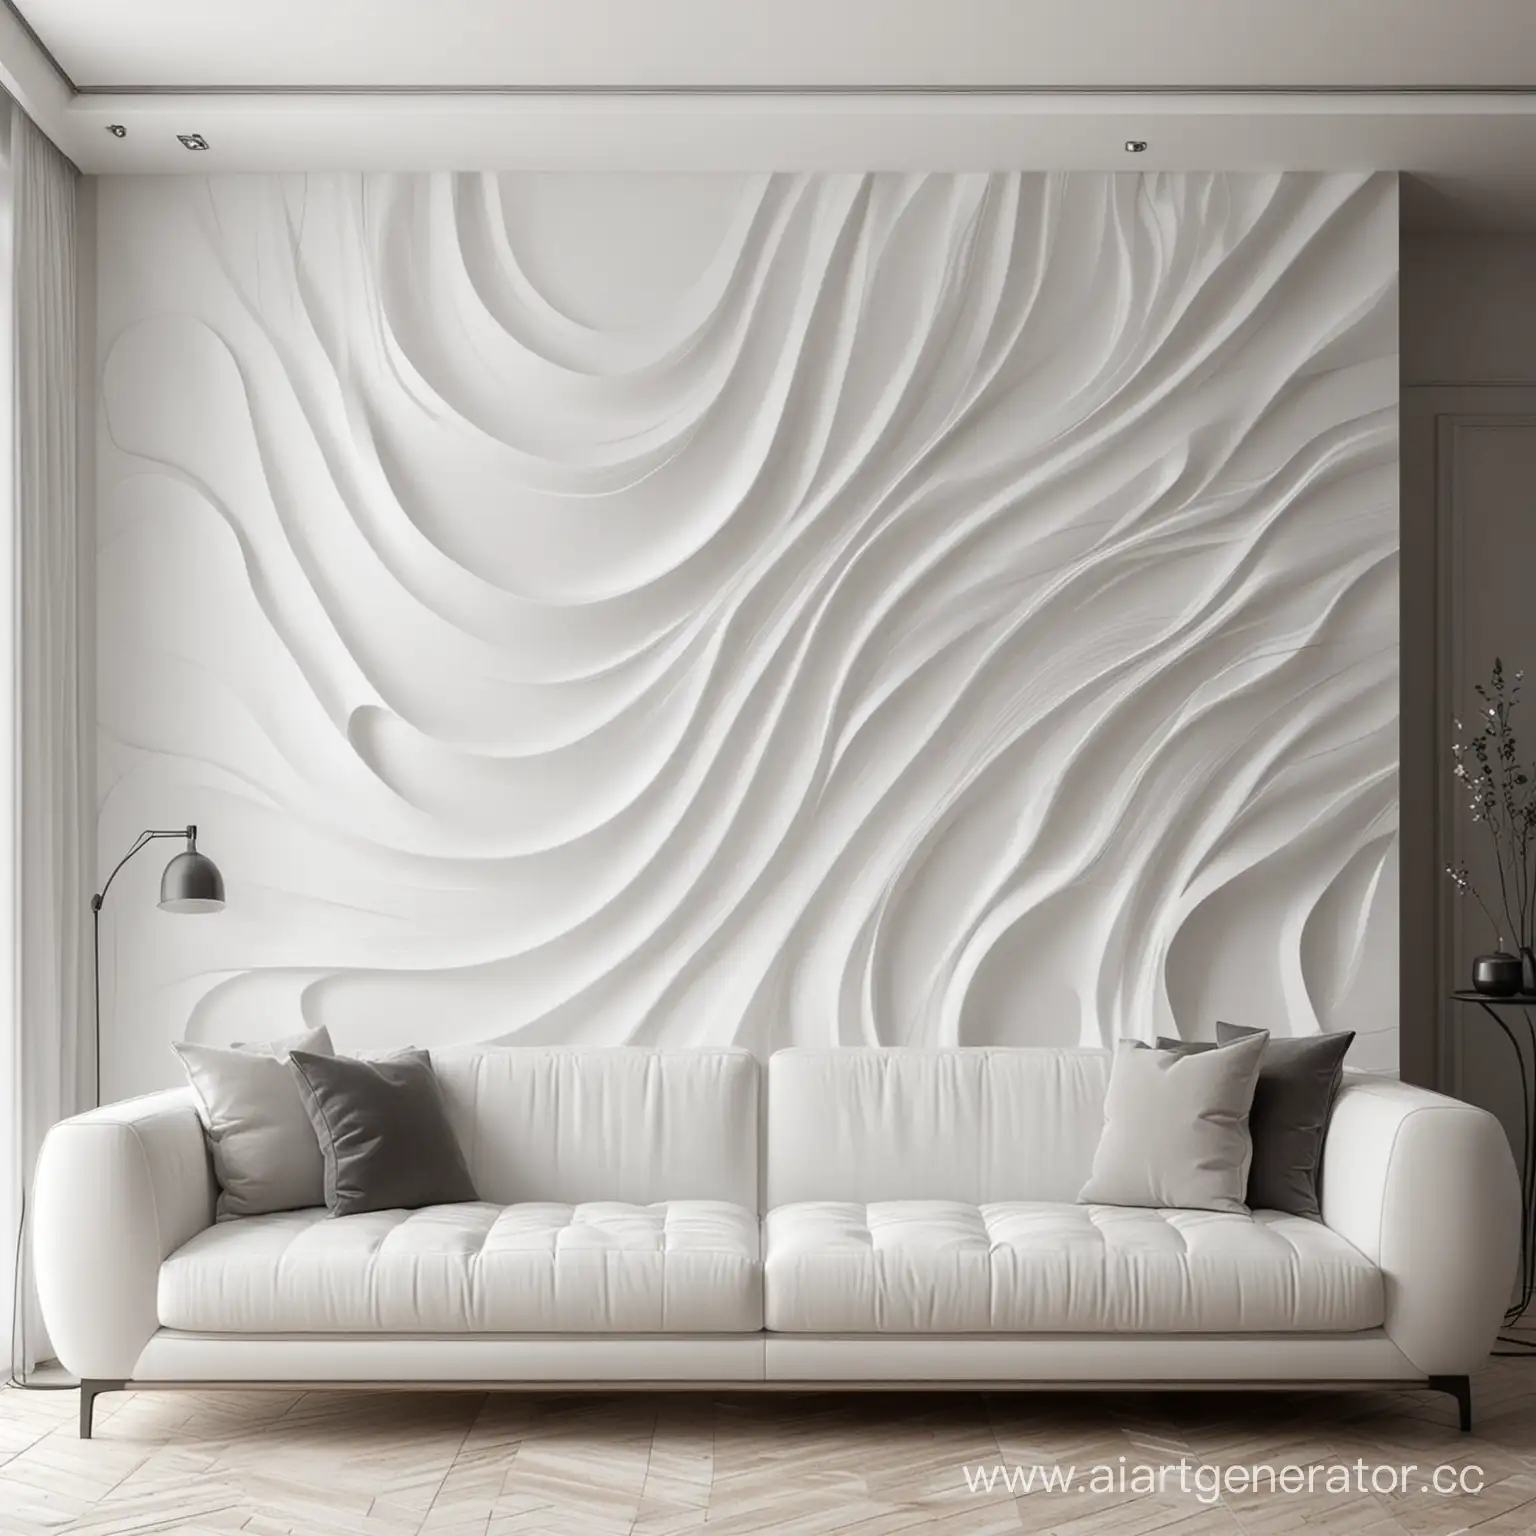 Декоративное абстрактное объёмное панно на стене в интерьере белого или черного цвета. Плавные линии